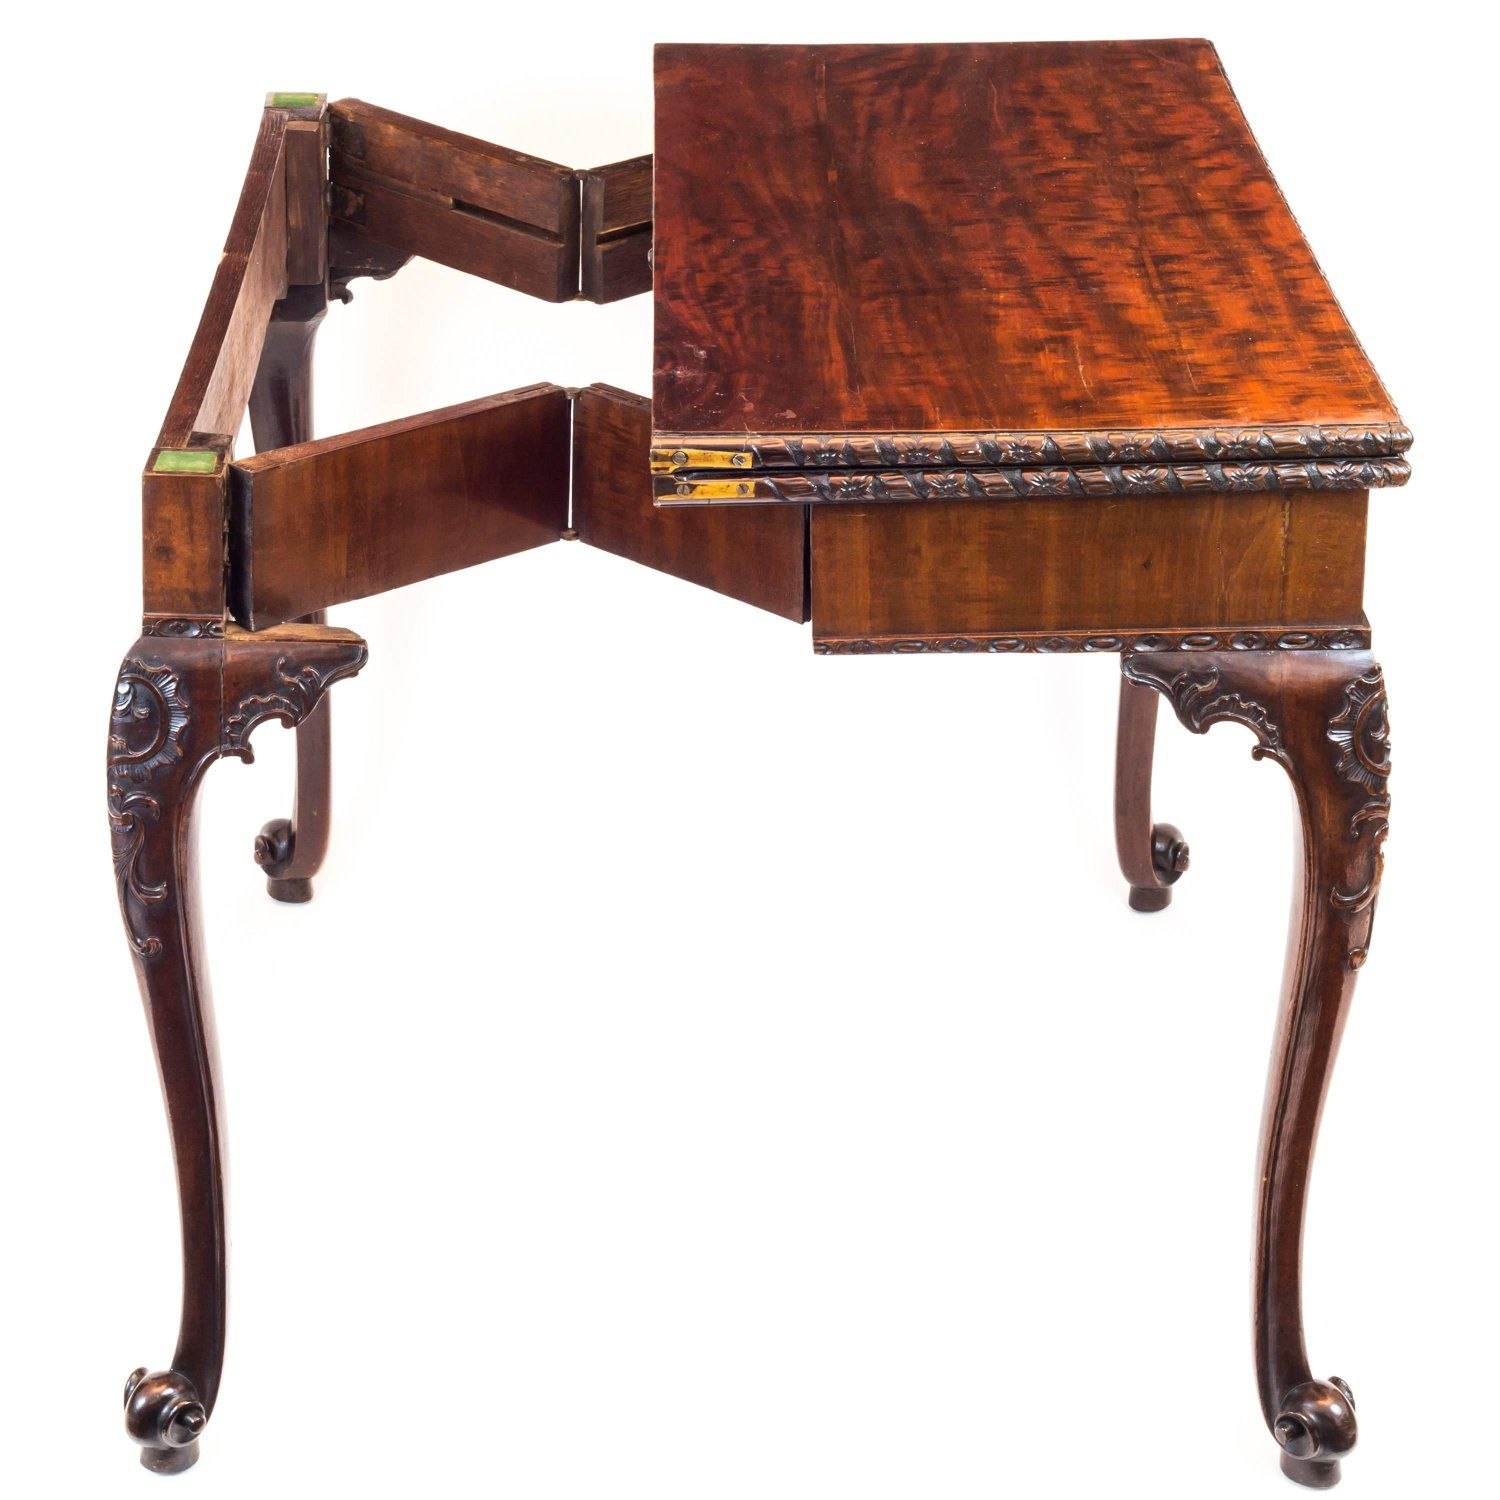 Карточный столик. Английская мебель Чиппендейл. Ломберный столик Тюдоров.